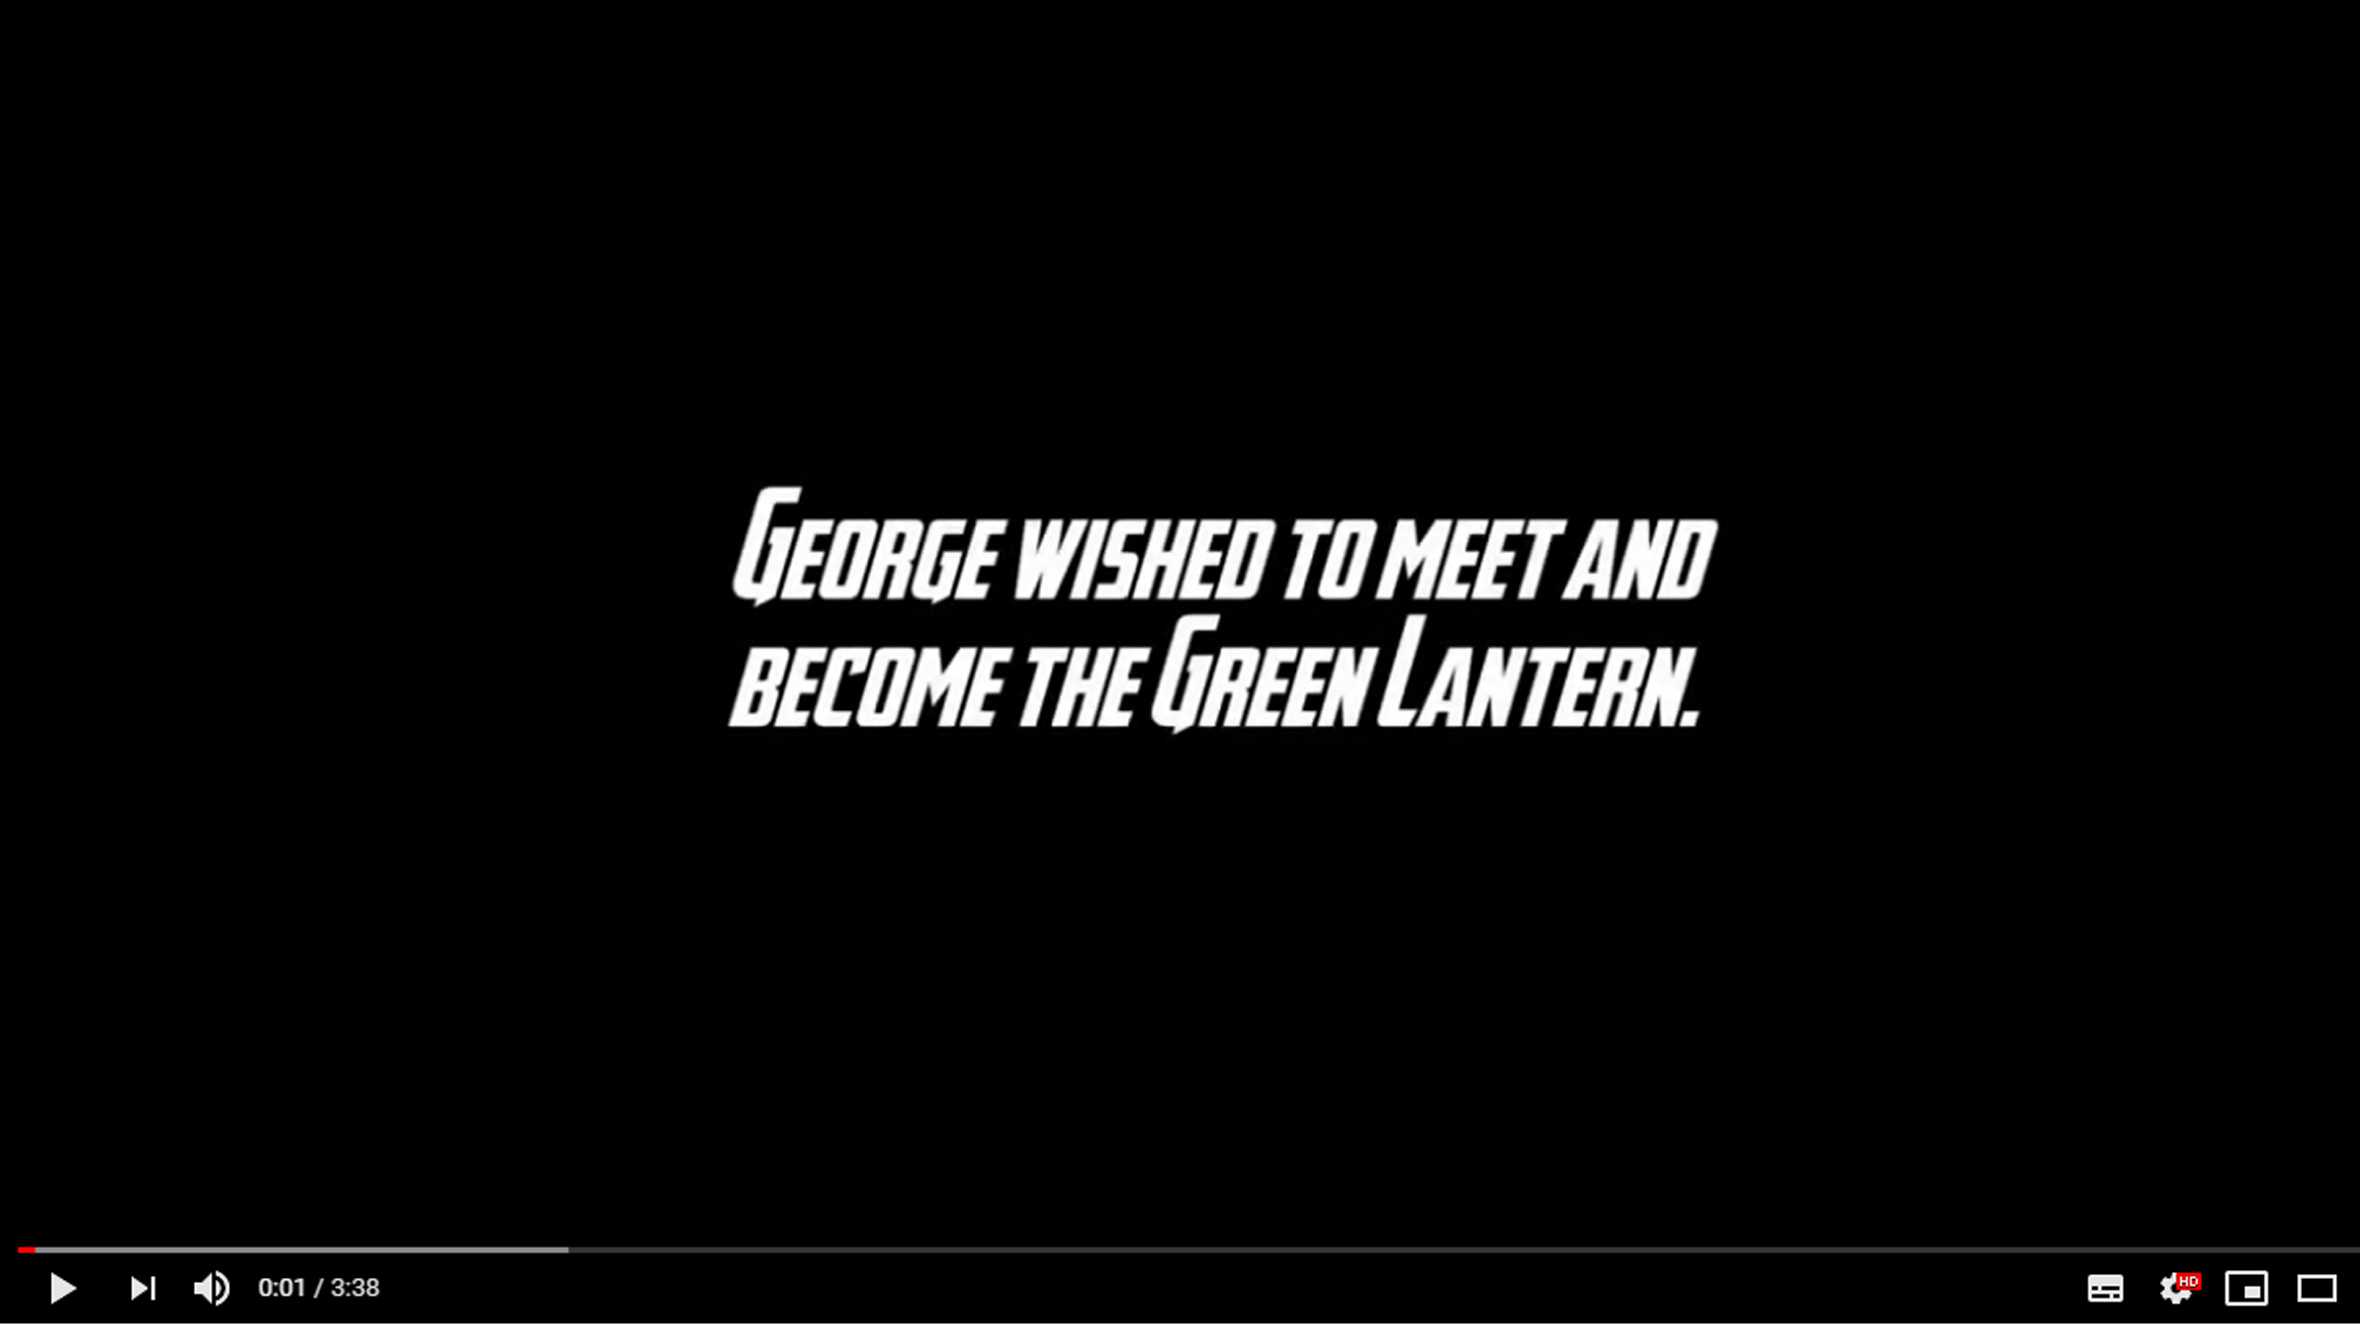 George's Green Lantern wish